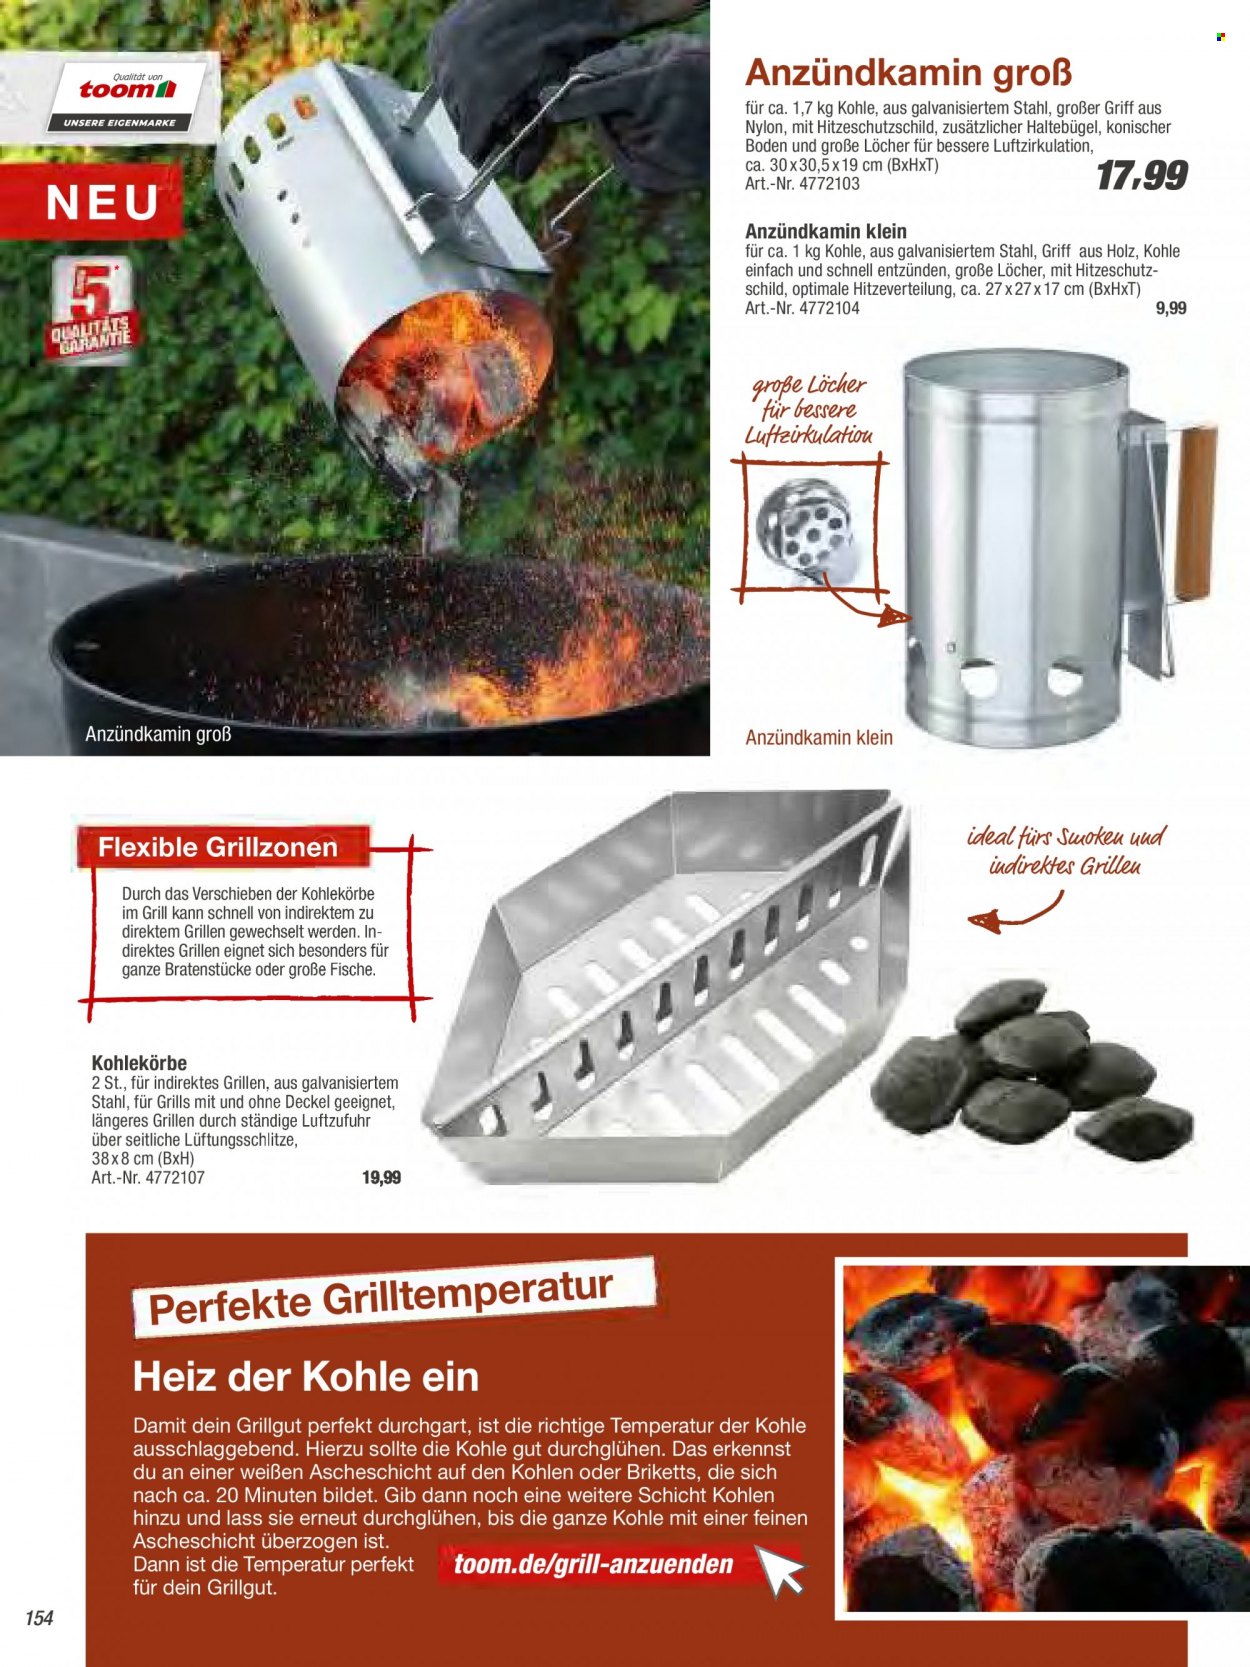 thumbnail - Prospekte toom Baumarkt - Produkte in Aktion - Locher, Anzündkamin, Briketts, Grill. Seite 154.